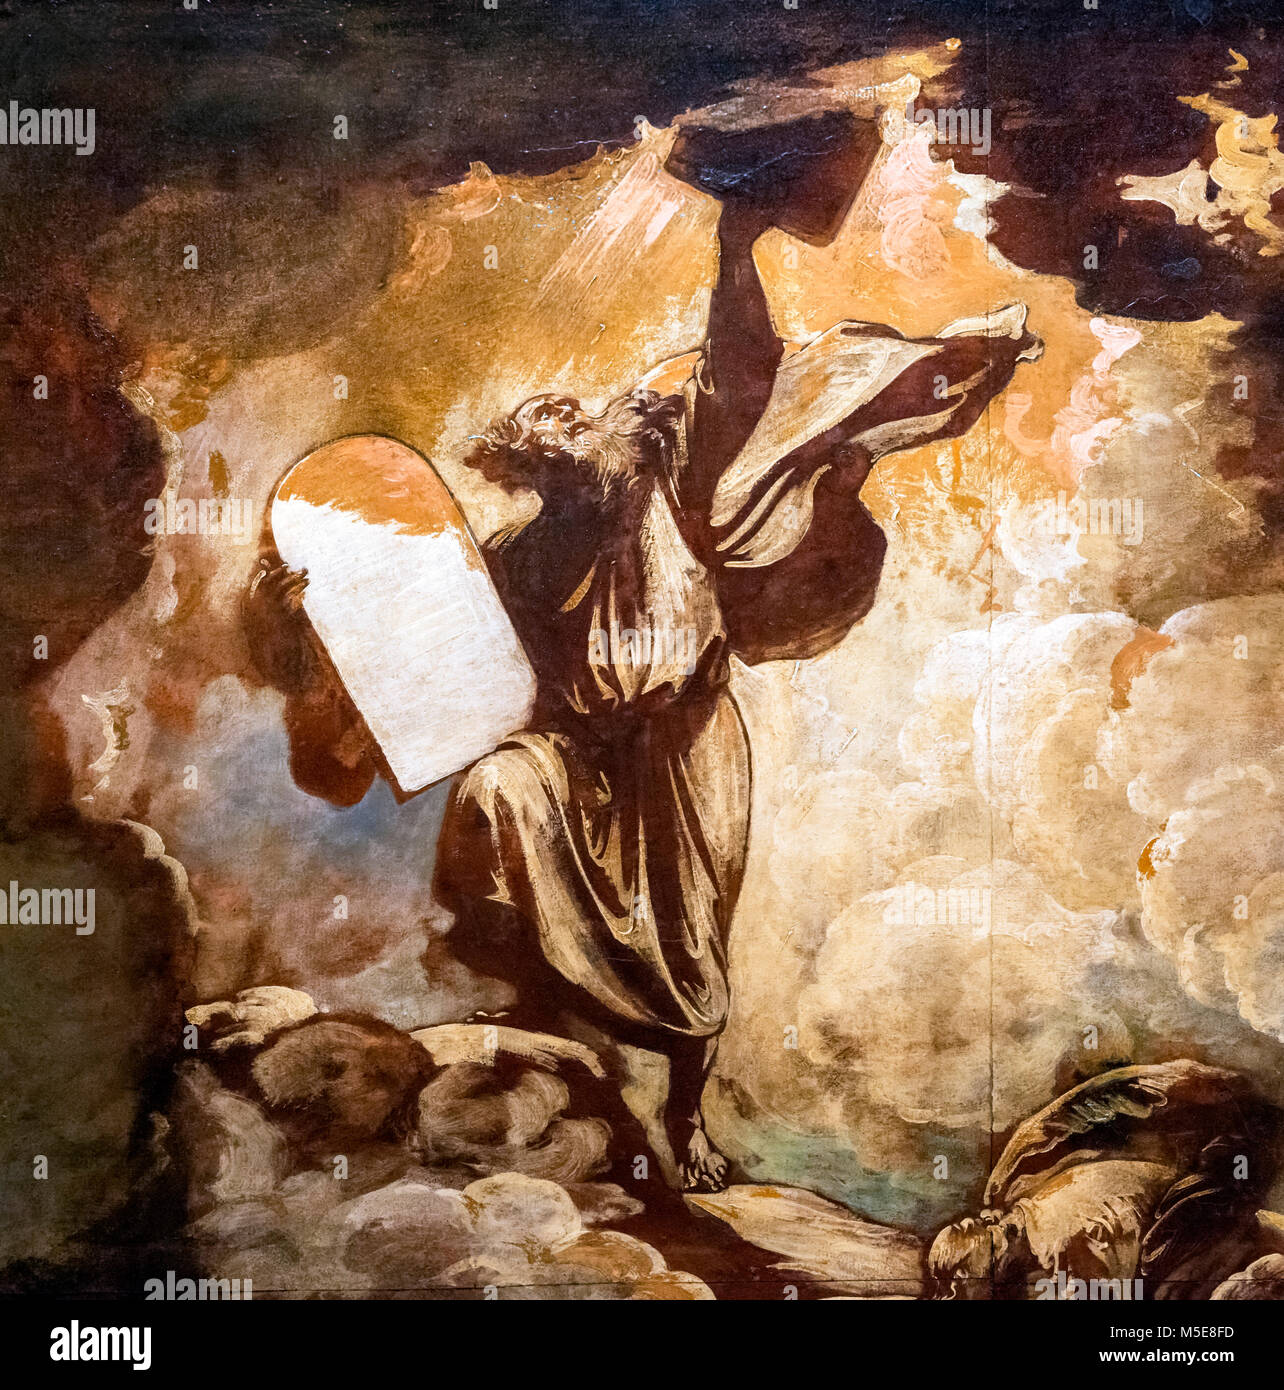 Moïse et les tables de la Loi par Benjamin West (1738-1820), huile sur papier, c.1780. C'est un croquis préparatoire pour une peinture plus montrant Moïse recevant les dix commandements de Dieu. Banque D'Images